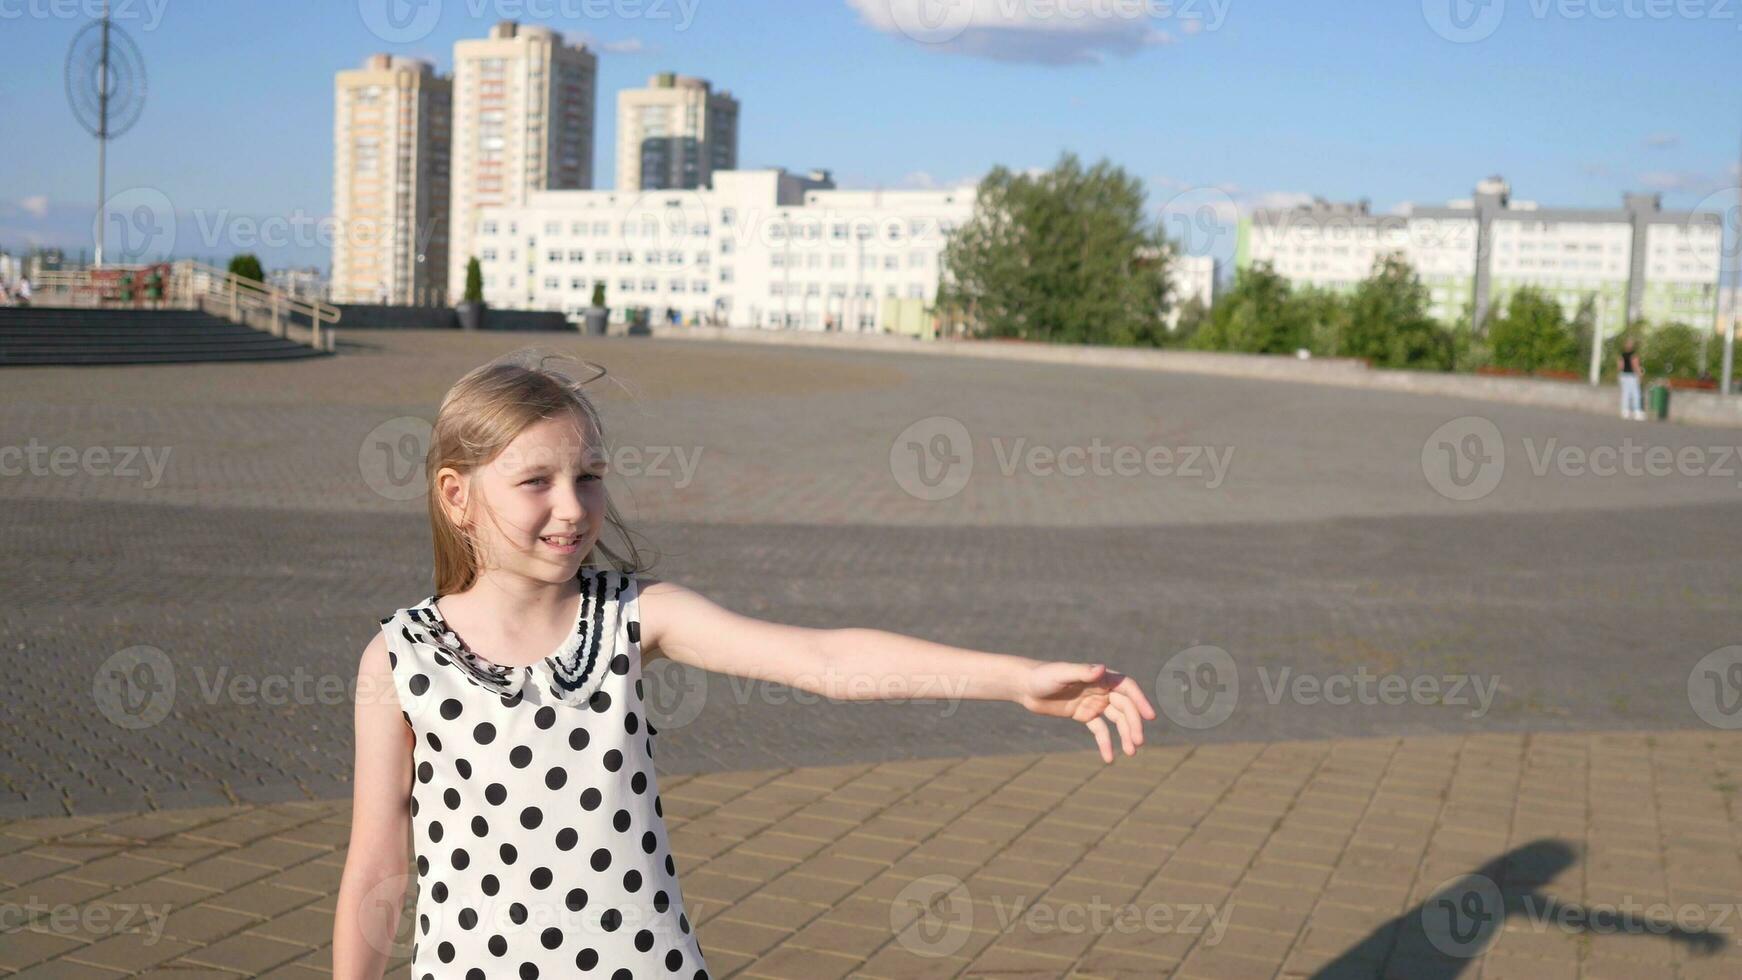 wenig Mädchen Kind glücklich spielen im Sommer- Park foto